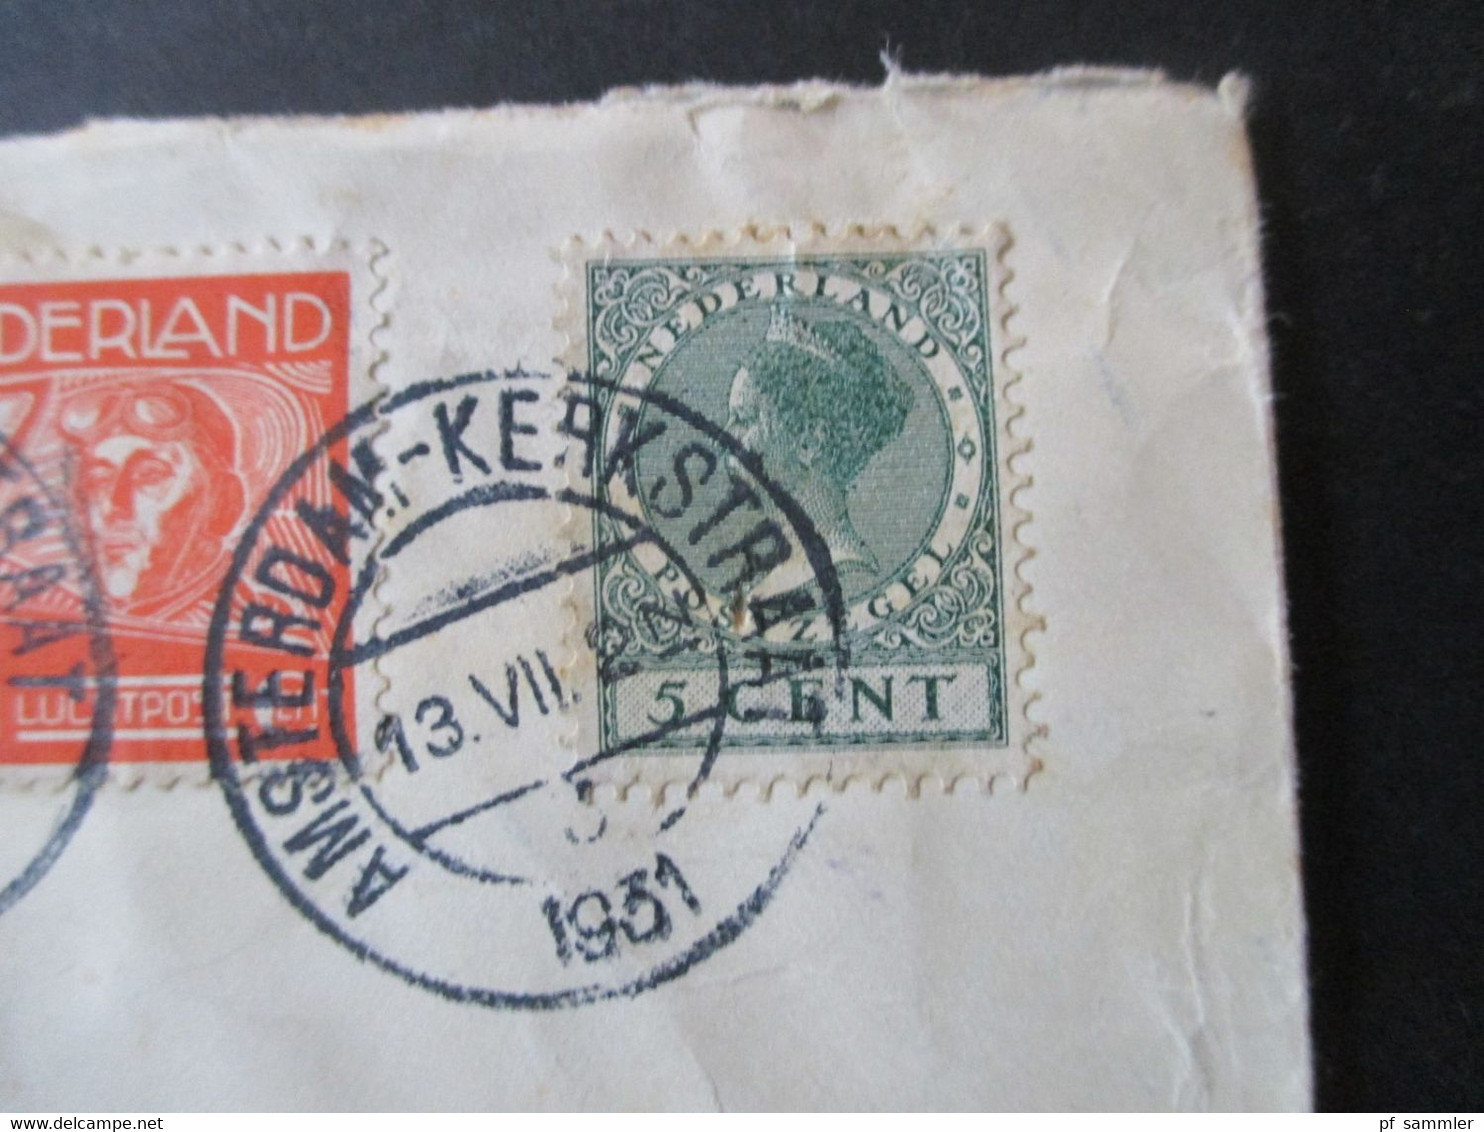 Niederlande 1931 Einschreiben Luftpost Amsterdam Kerkstraat - Wien Rücks. Aufkleber K.L.M. Royal Dutch Air Lines Holland - Lettres & Documents